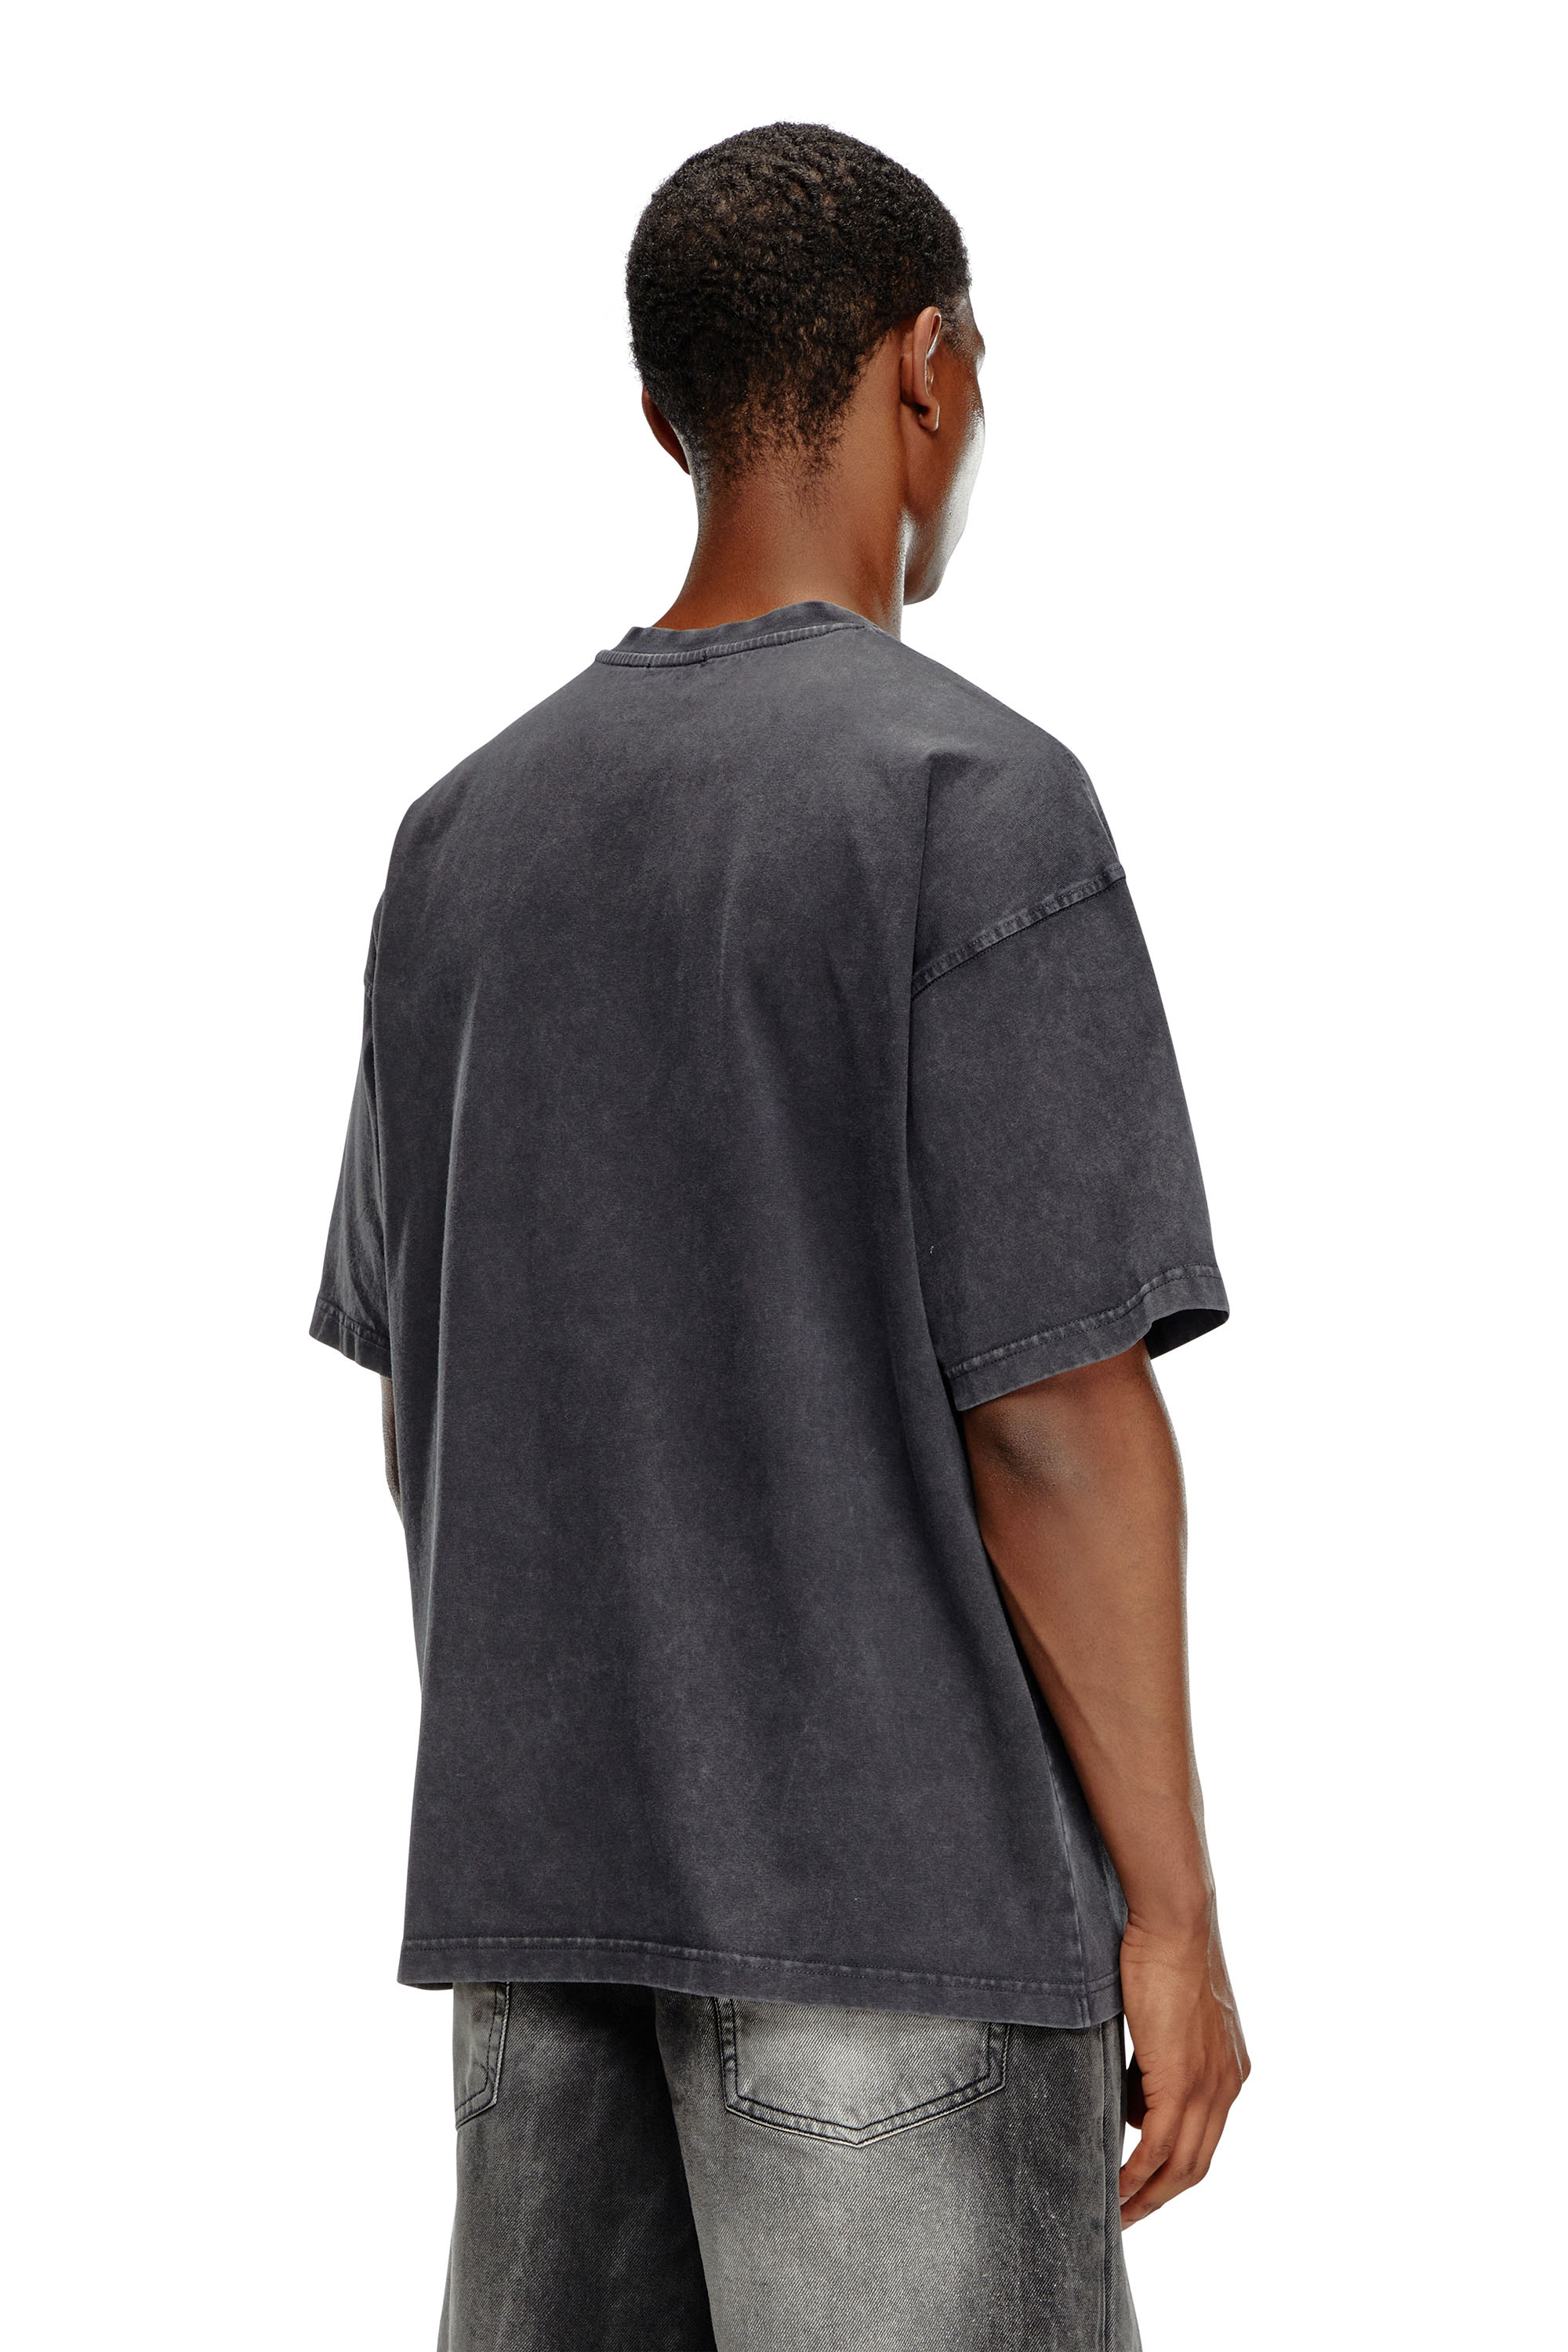 Diesel - T-BOXT-Q22, Homme T-shirt délavé avec imprimé Oval D in Noir - Image 4